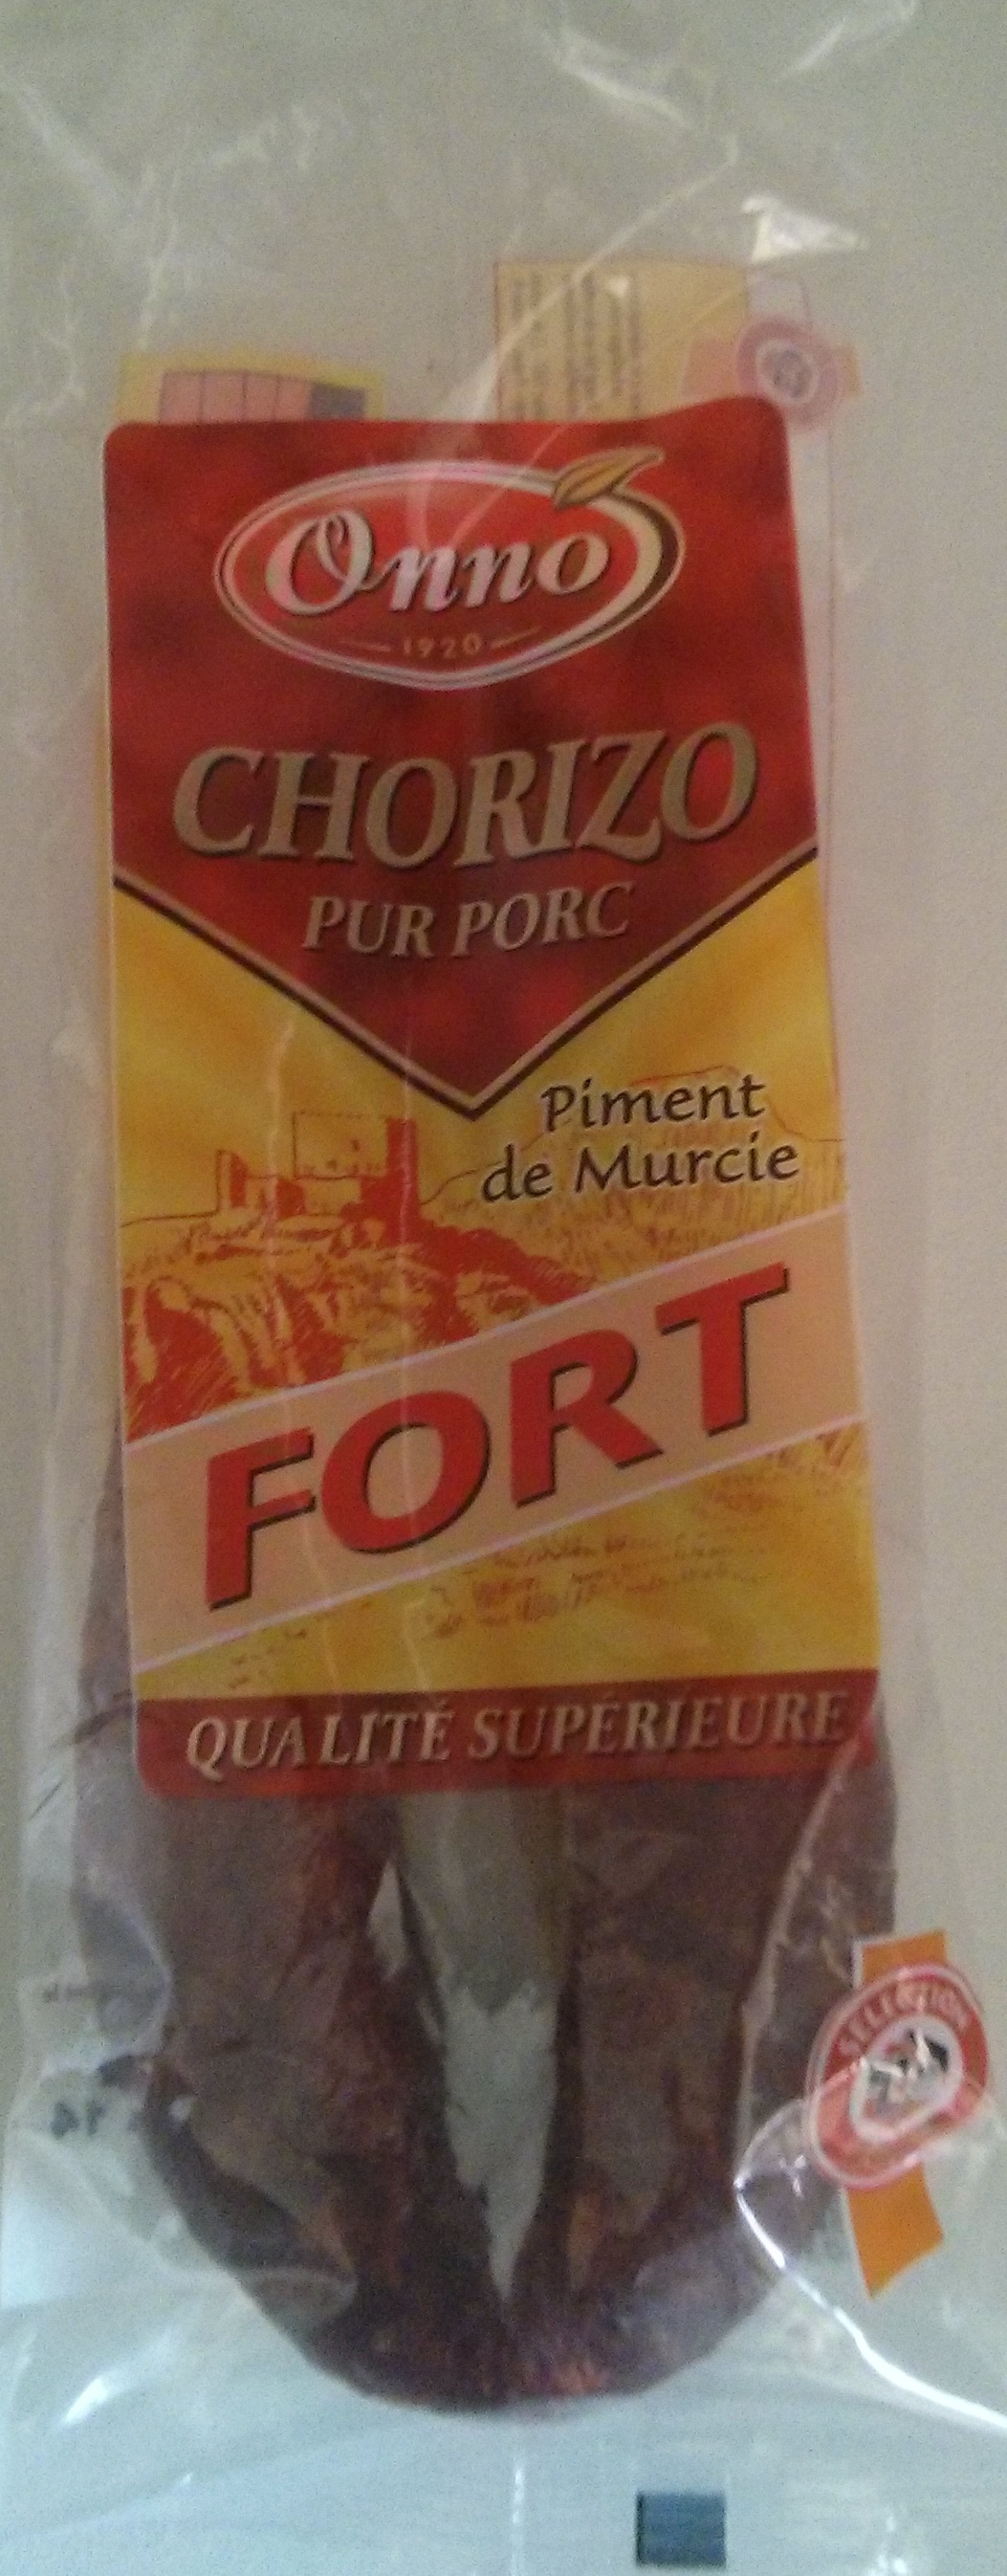 Chorizo pur porc Piment de murcie Fort - Product - fr